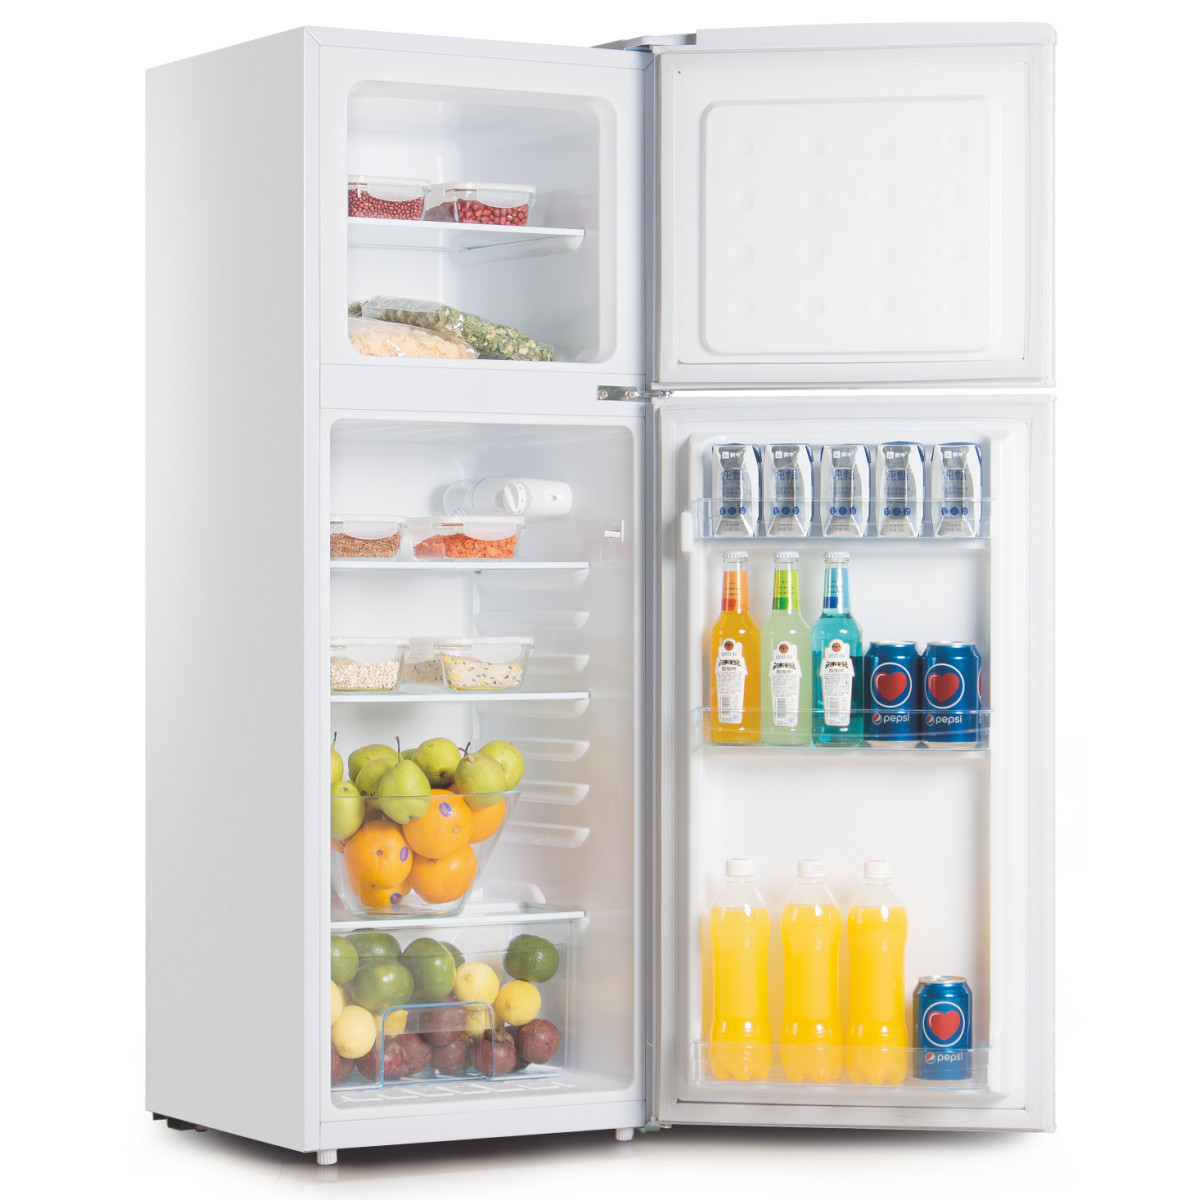 Réfrigérateur-Congélateur 2 portes - Blanc 88L - RFDP96A+